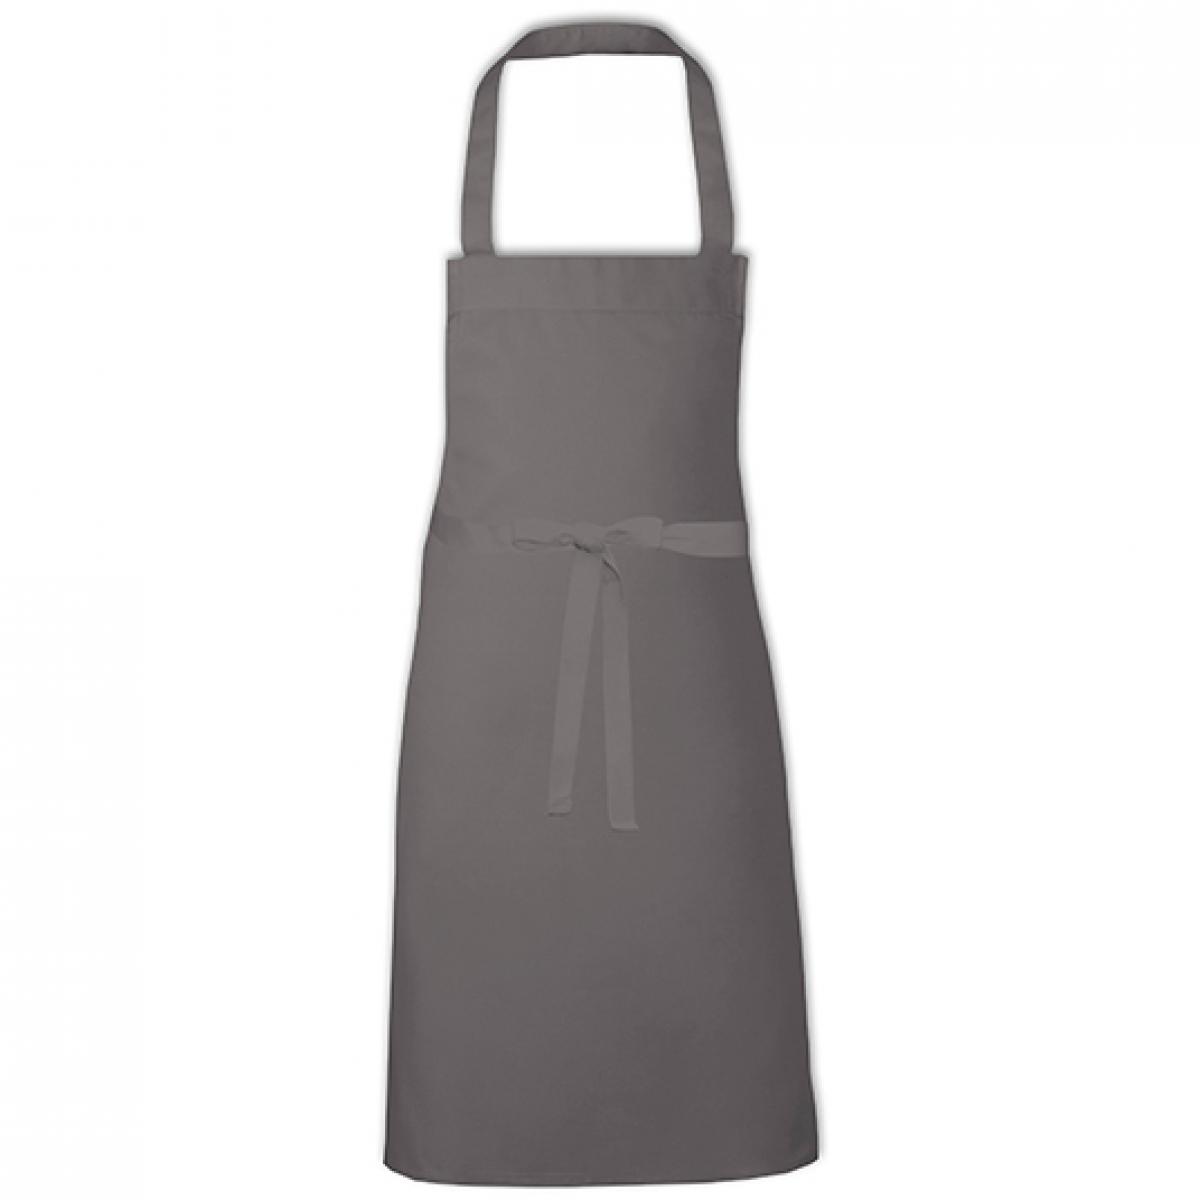 Hersteller: Link Kitchen Wear Herstellernummer: BBQC8070 Artikelbezeichnung: Cotton Barbecue Apron - Grillschürze Farbe: Dark Grey (ca. Pantone 431)